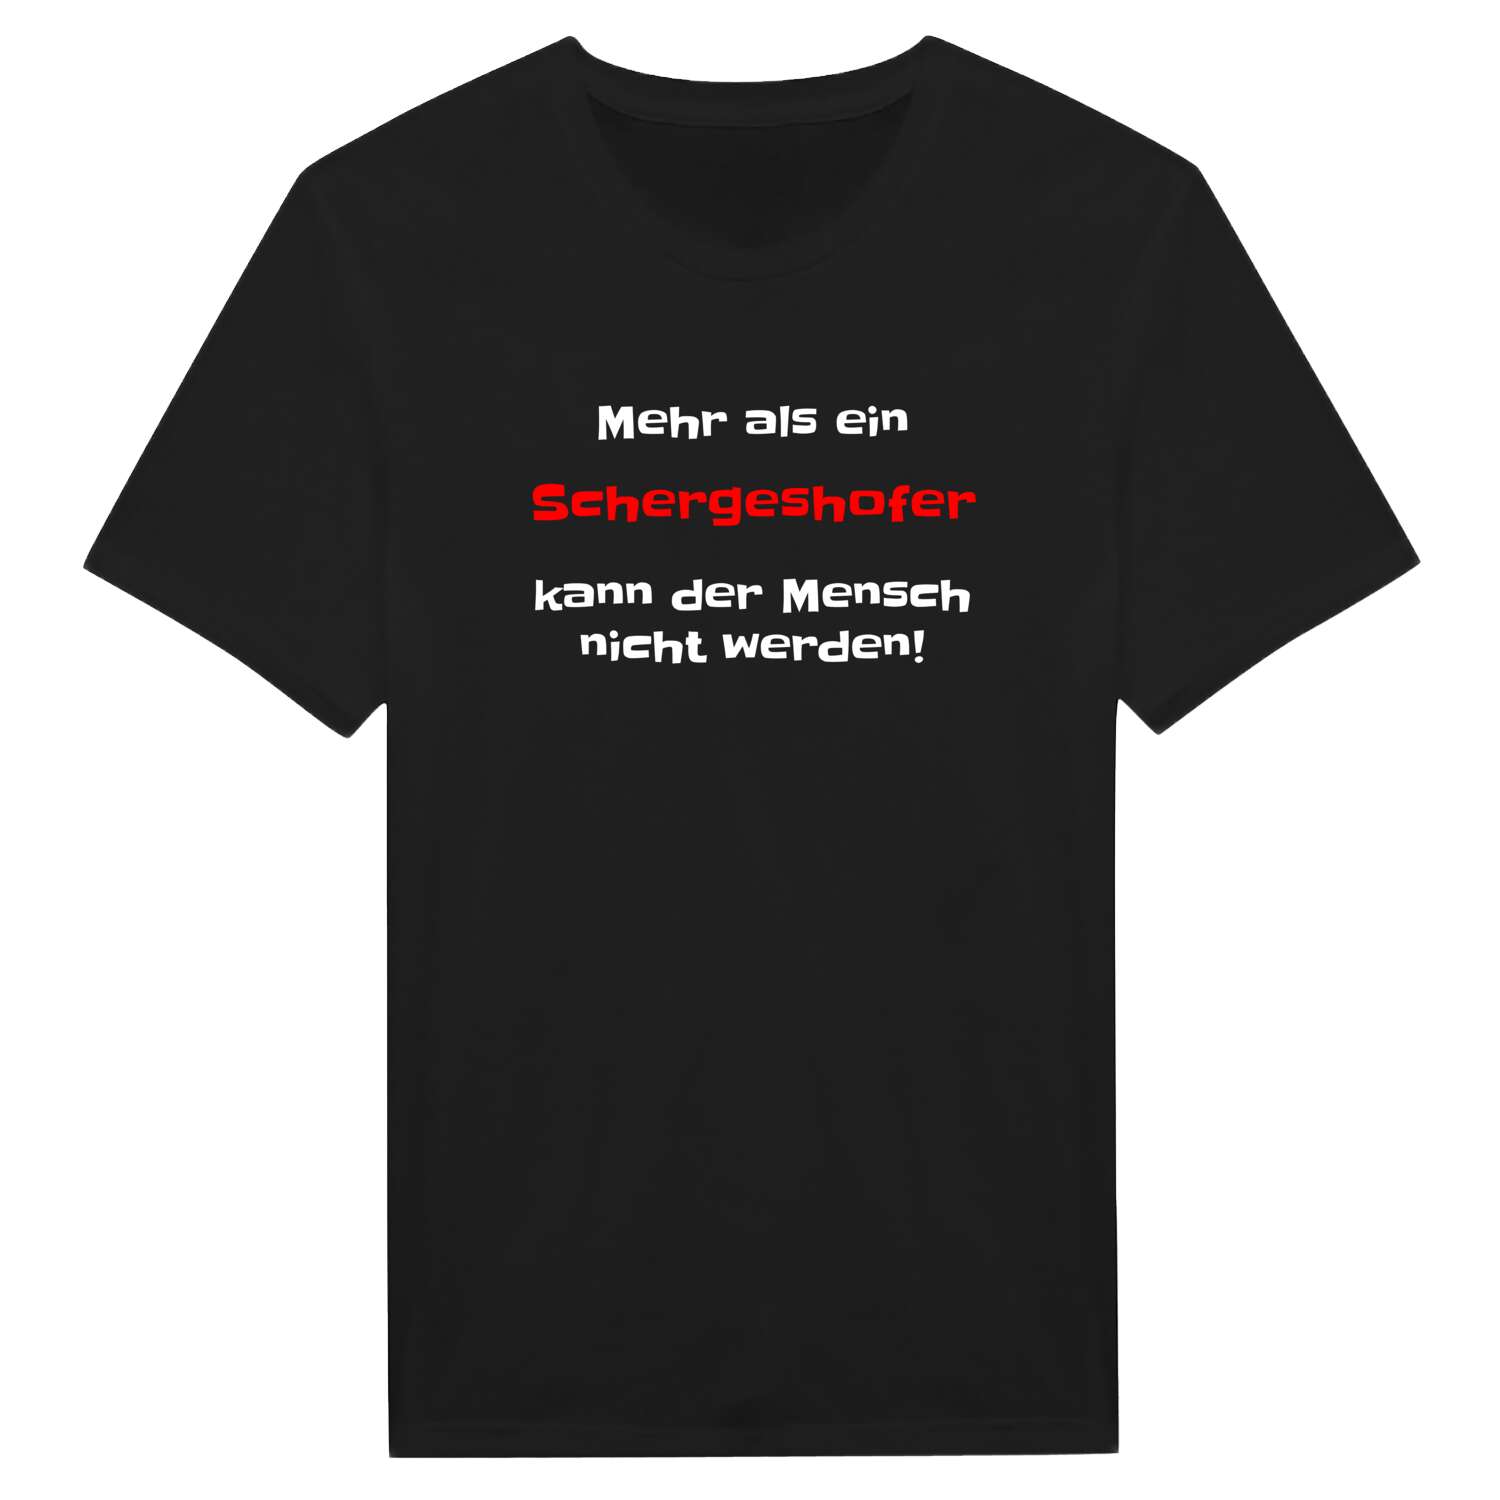 Schergeshof T-Shirt »Mehr als ein«